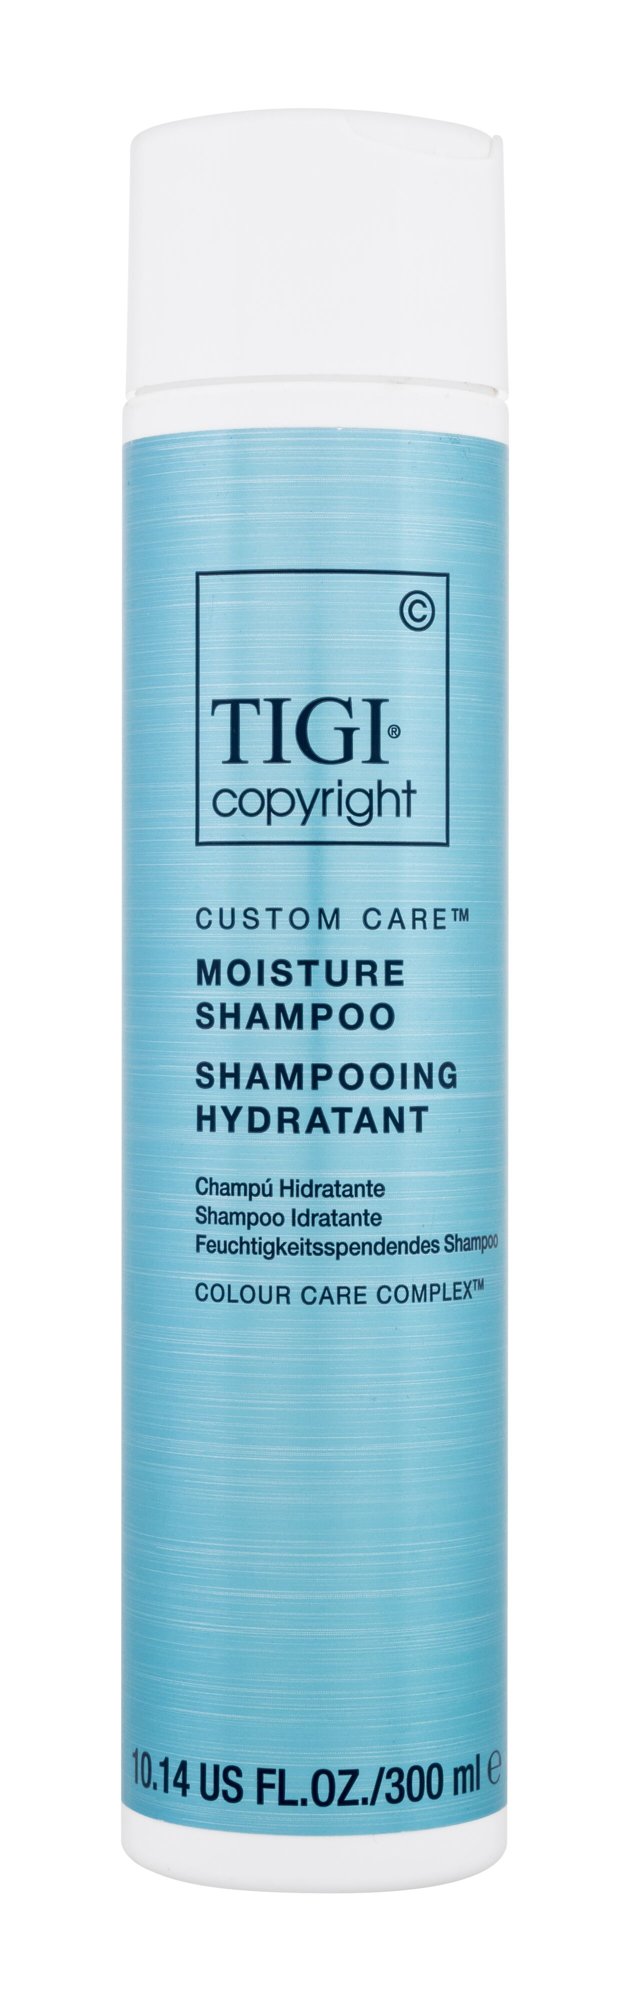 Tigi Copyright Custom Care Moisture Shampoo 300ml šampūnas (Pažeista pakuotė)